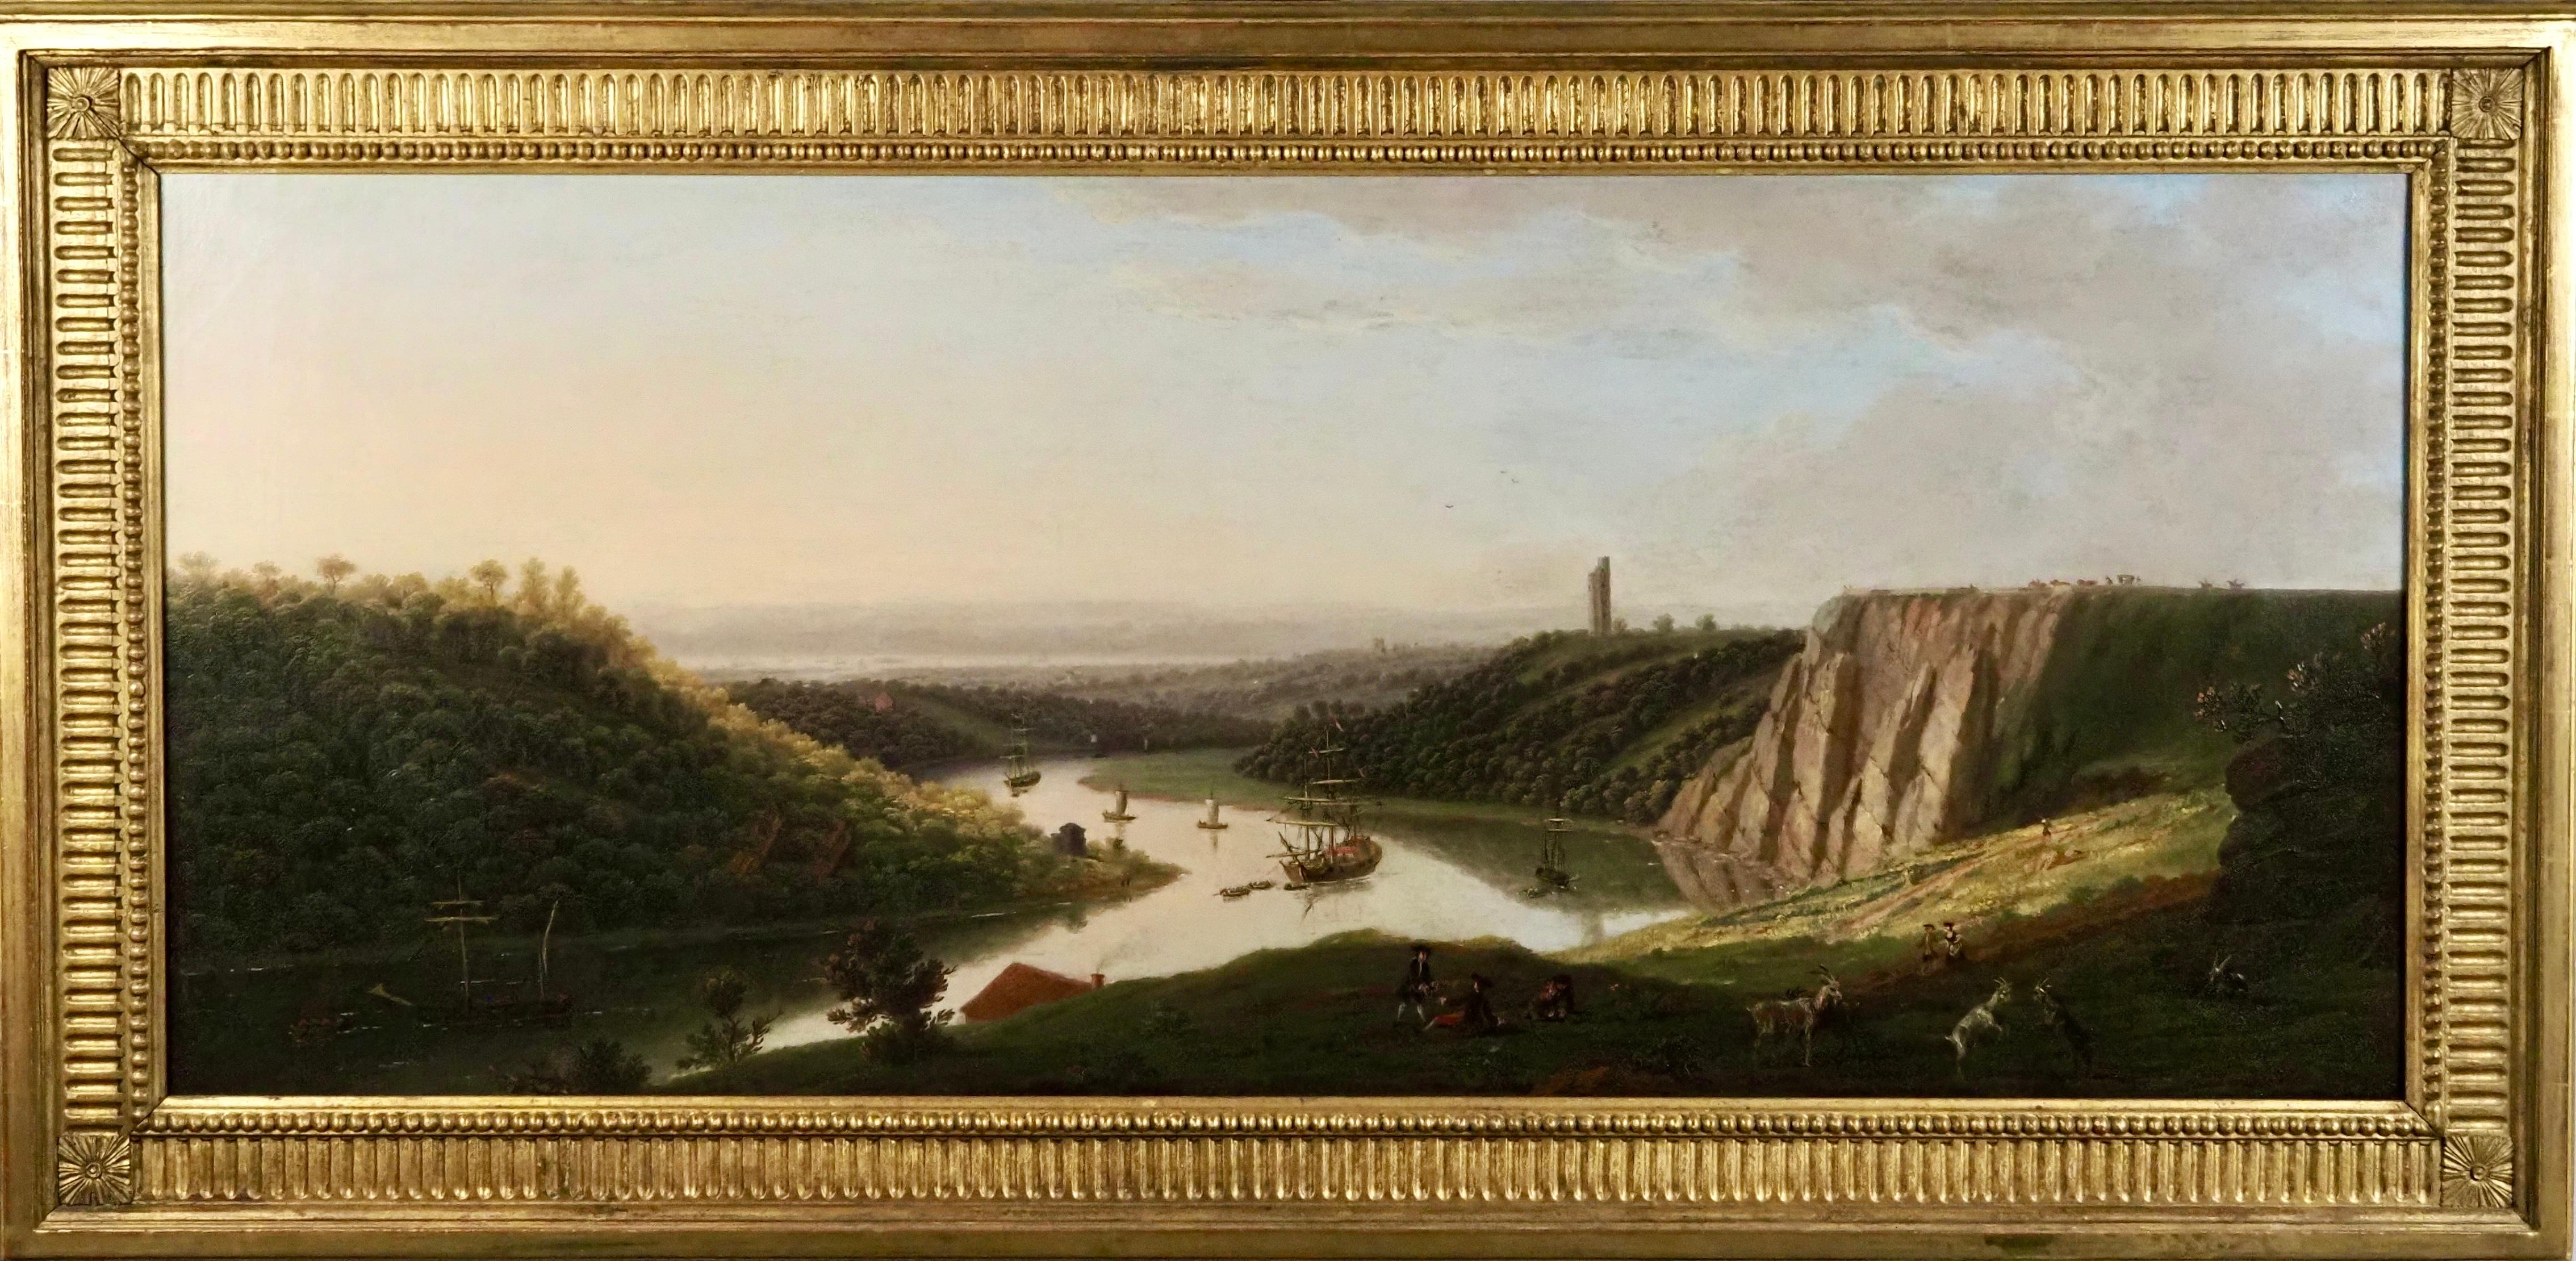 Vista de la navegación por el río Avon desde Durdham Down, cerca de Bristol